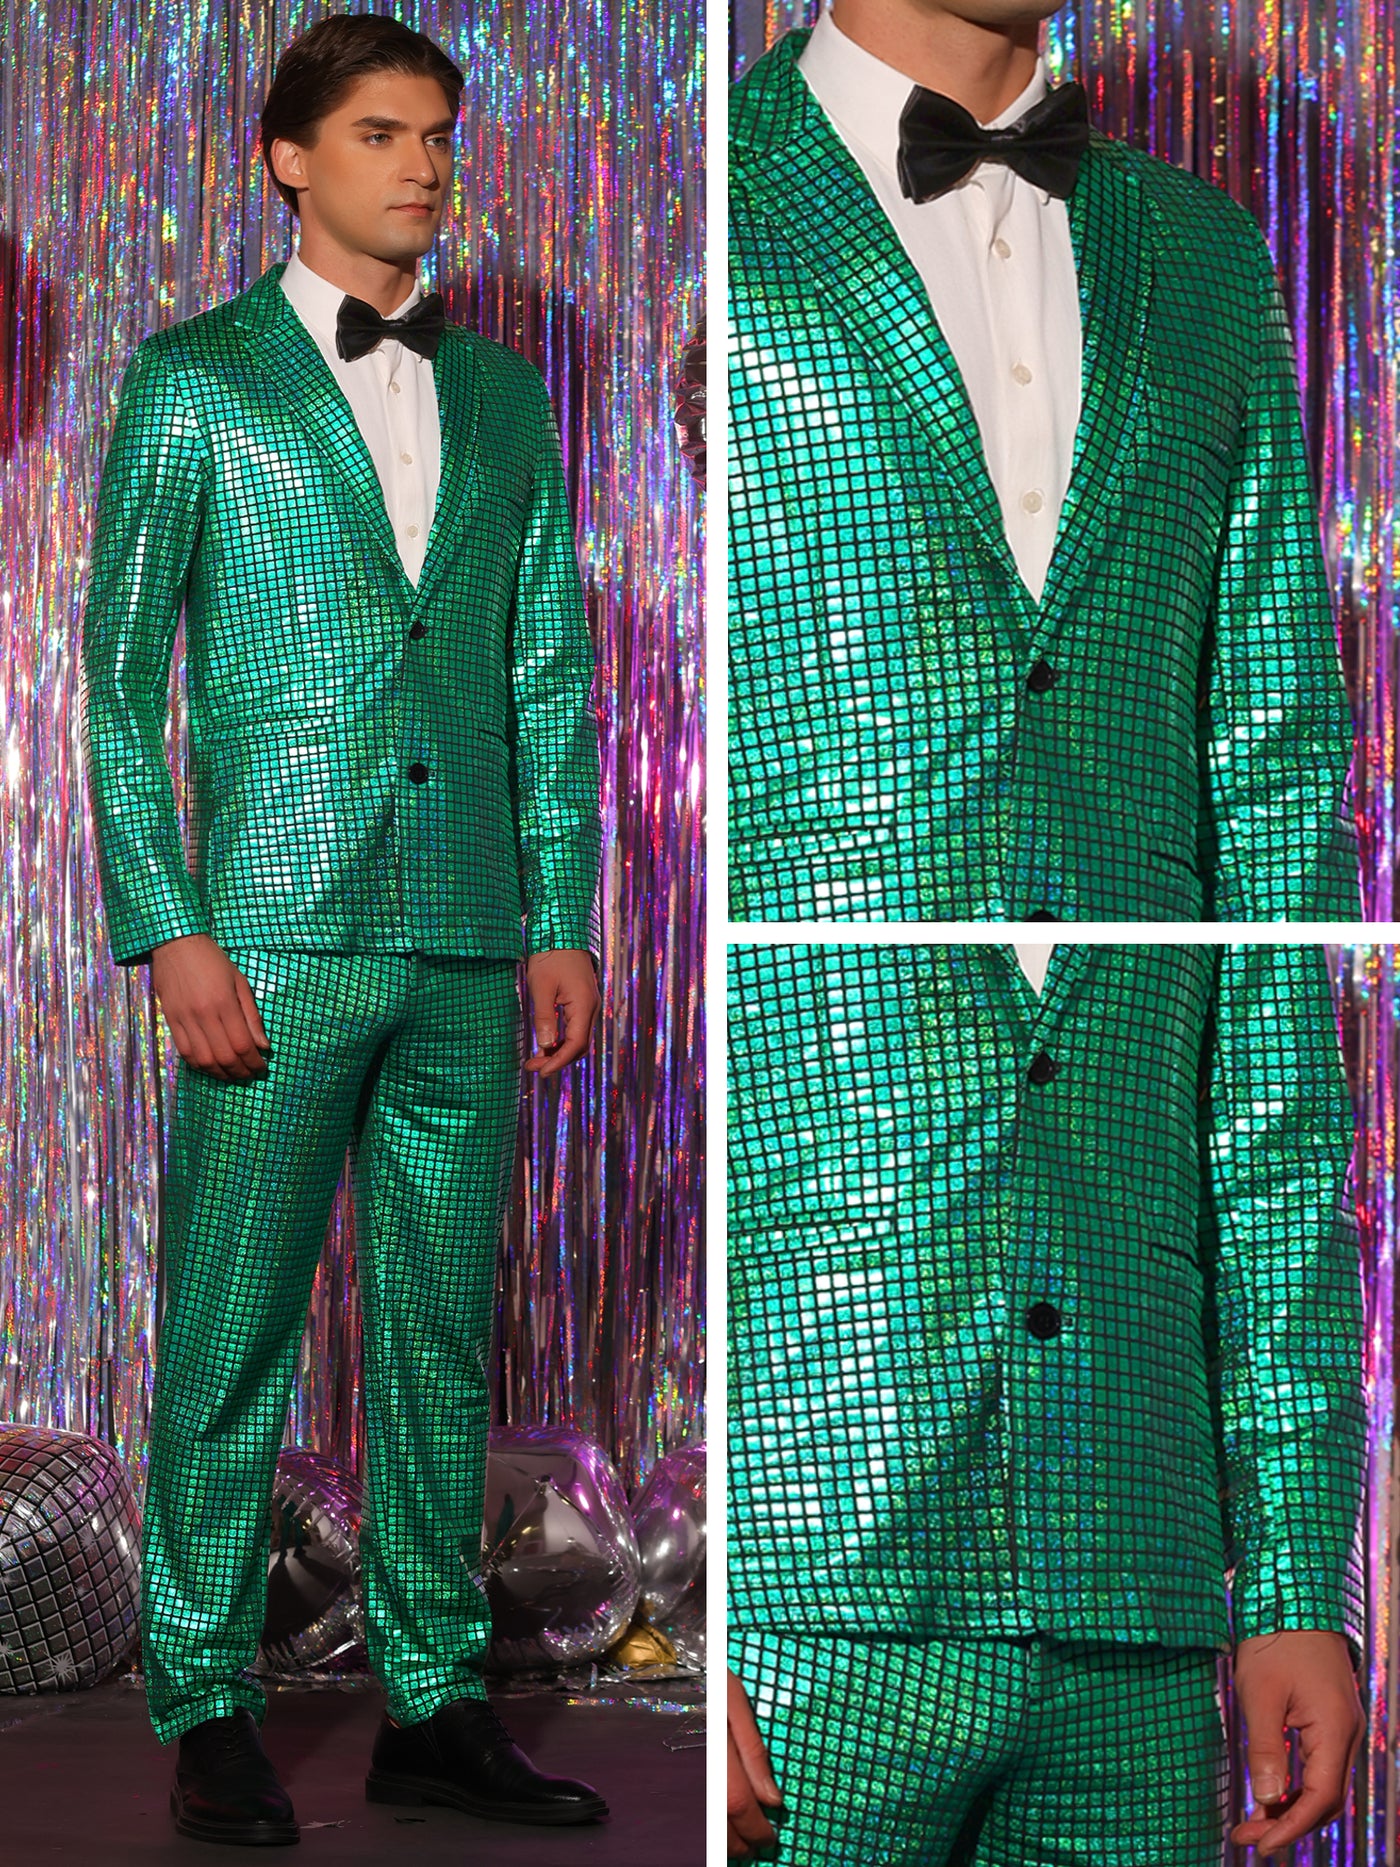 Bublédon Metallic Sequin Blazer and Pants Party Two Pieces Suit Set